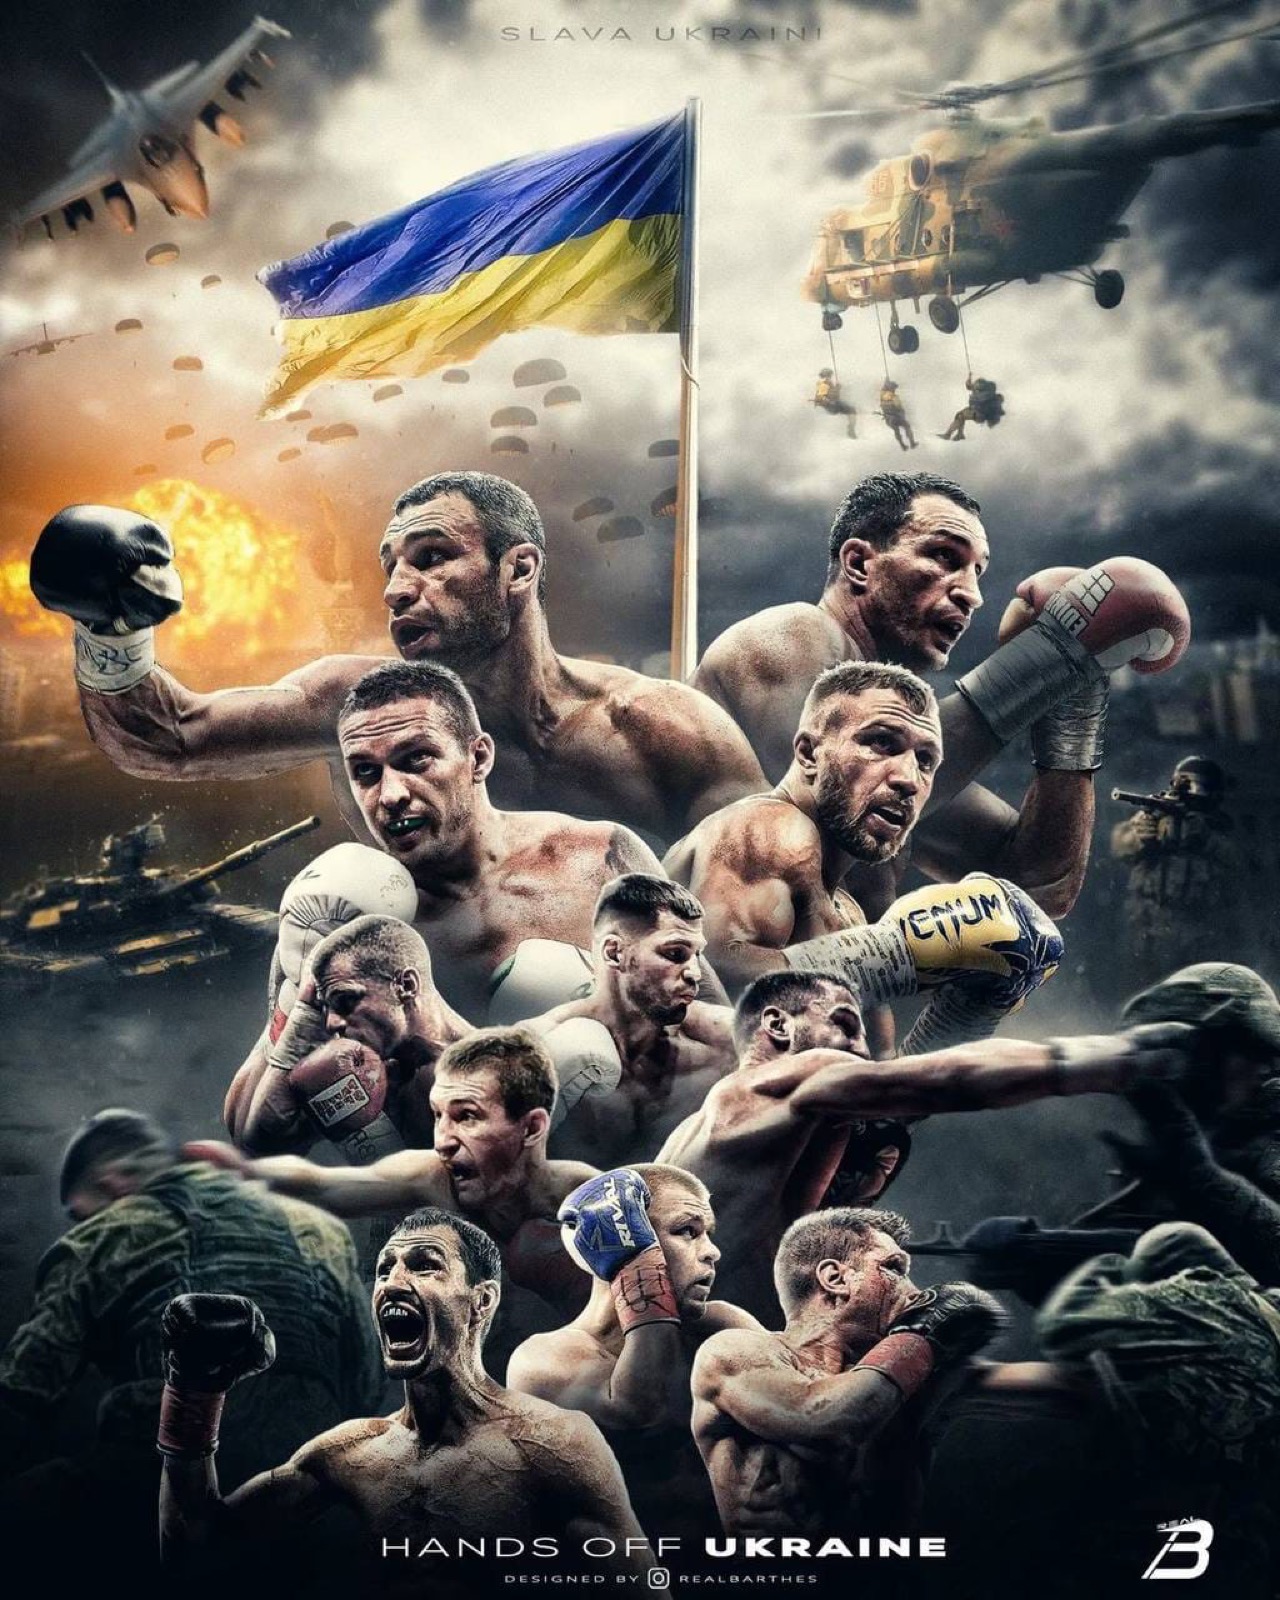 Alexander Usyk, Vitali Klitschko boxing image / photo